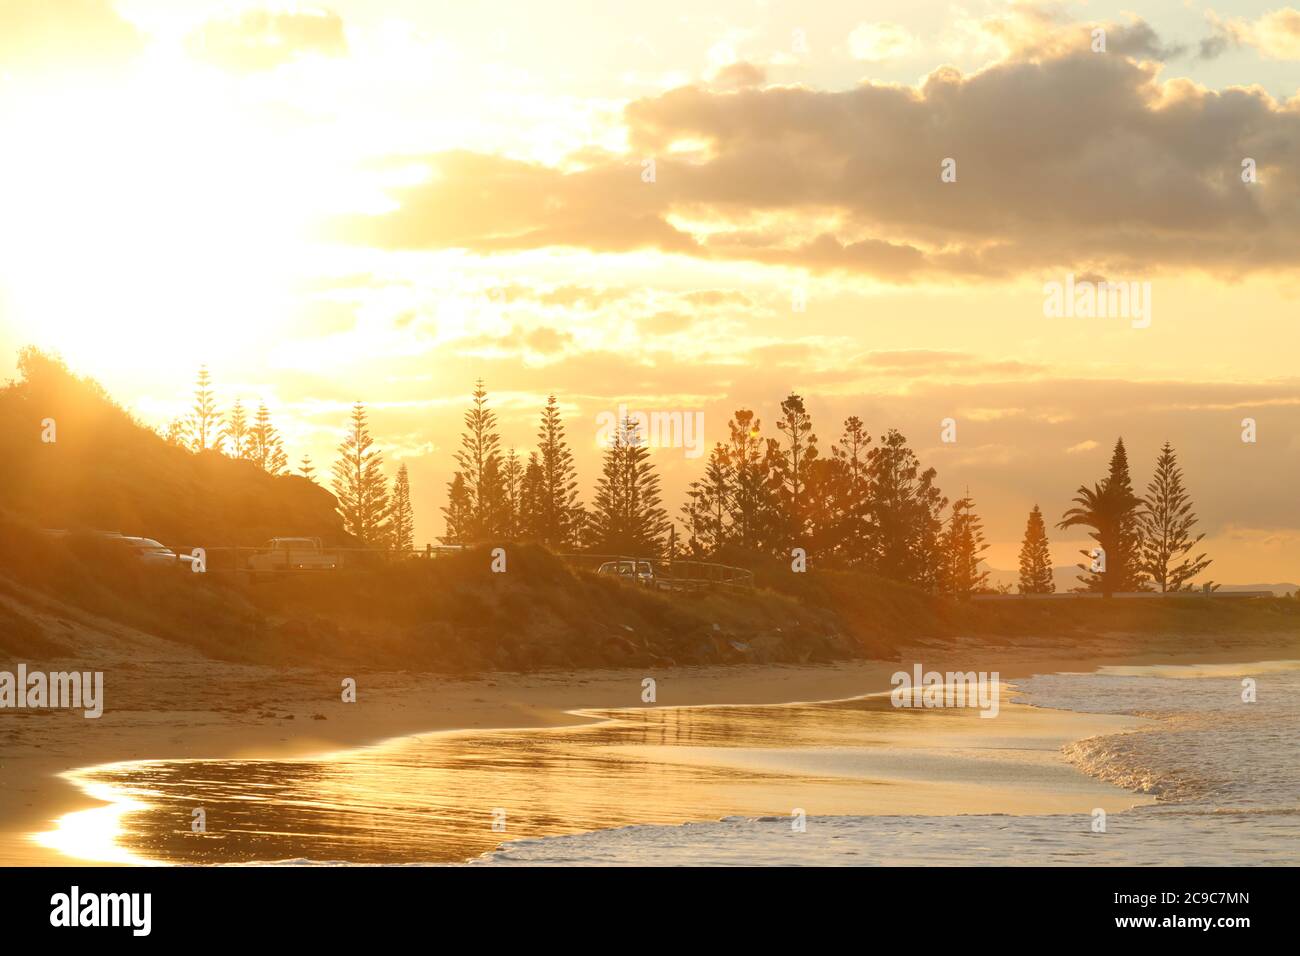 Town Beach, Port Macquarie, mi-côte nord de la Nouvelle-Galles du Sud Australie. Magnifique coucher de soleil à l'heure d'or sur une plage de surf côtière. Soleil, surf sur sable. Voyage Banque D'Images